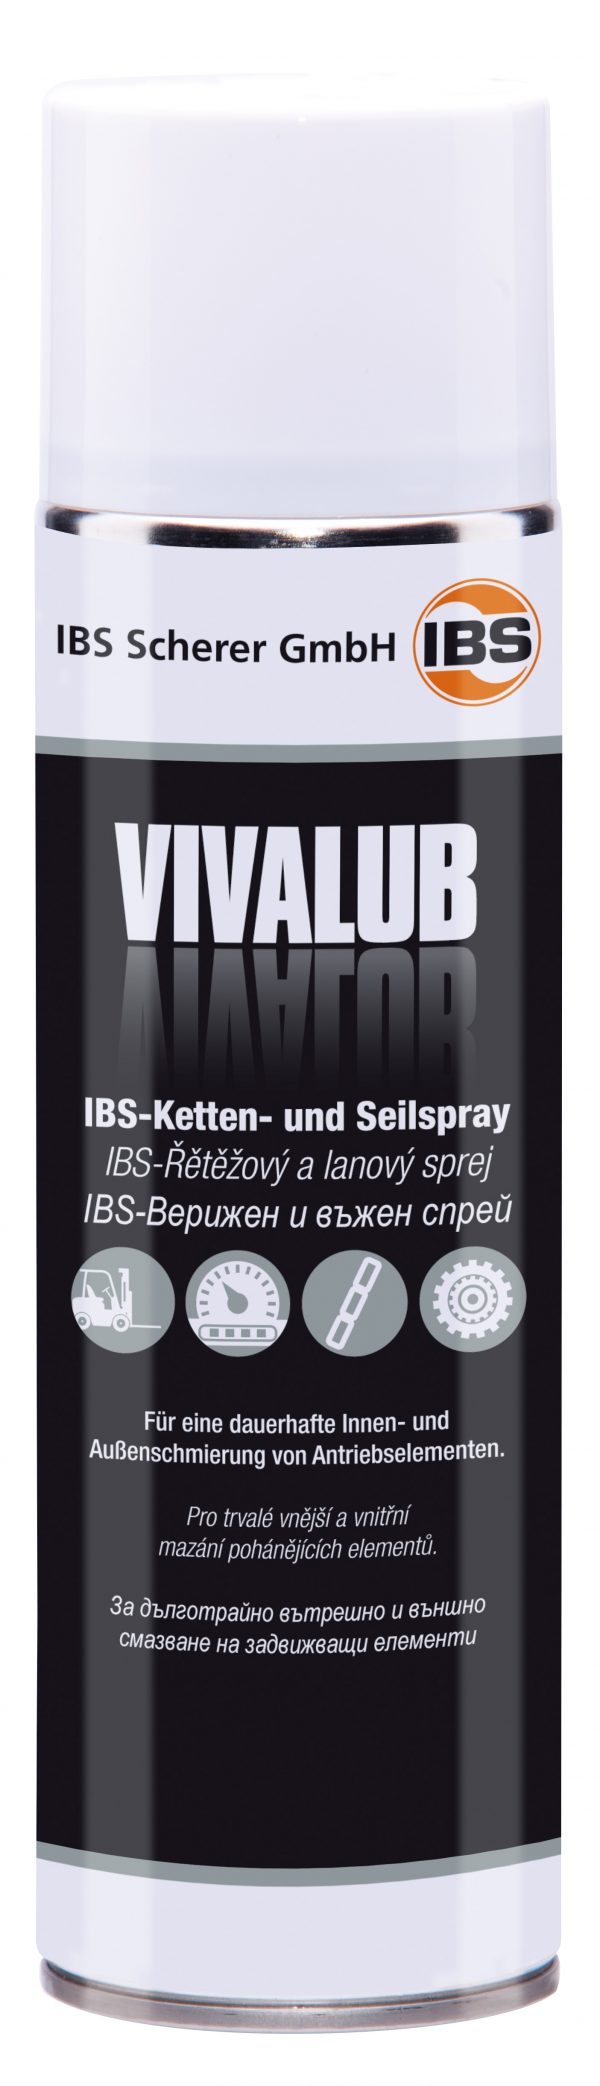 IBS-Chain-Spray VivaLub